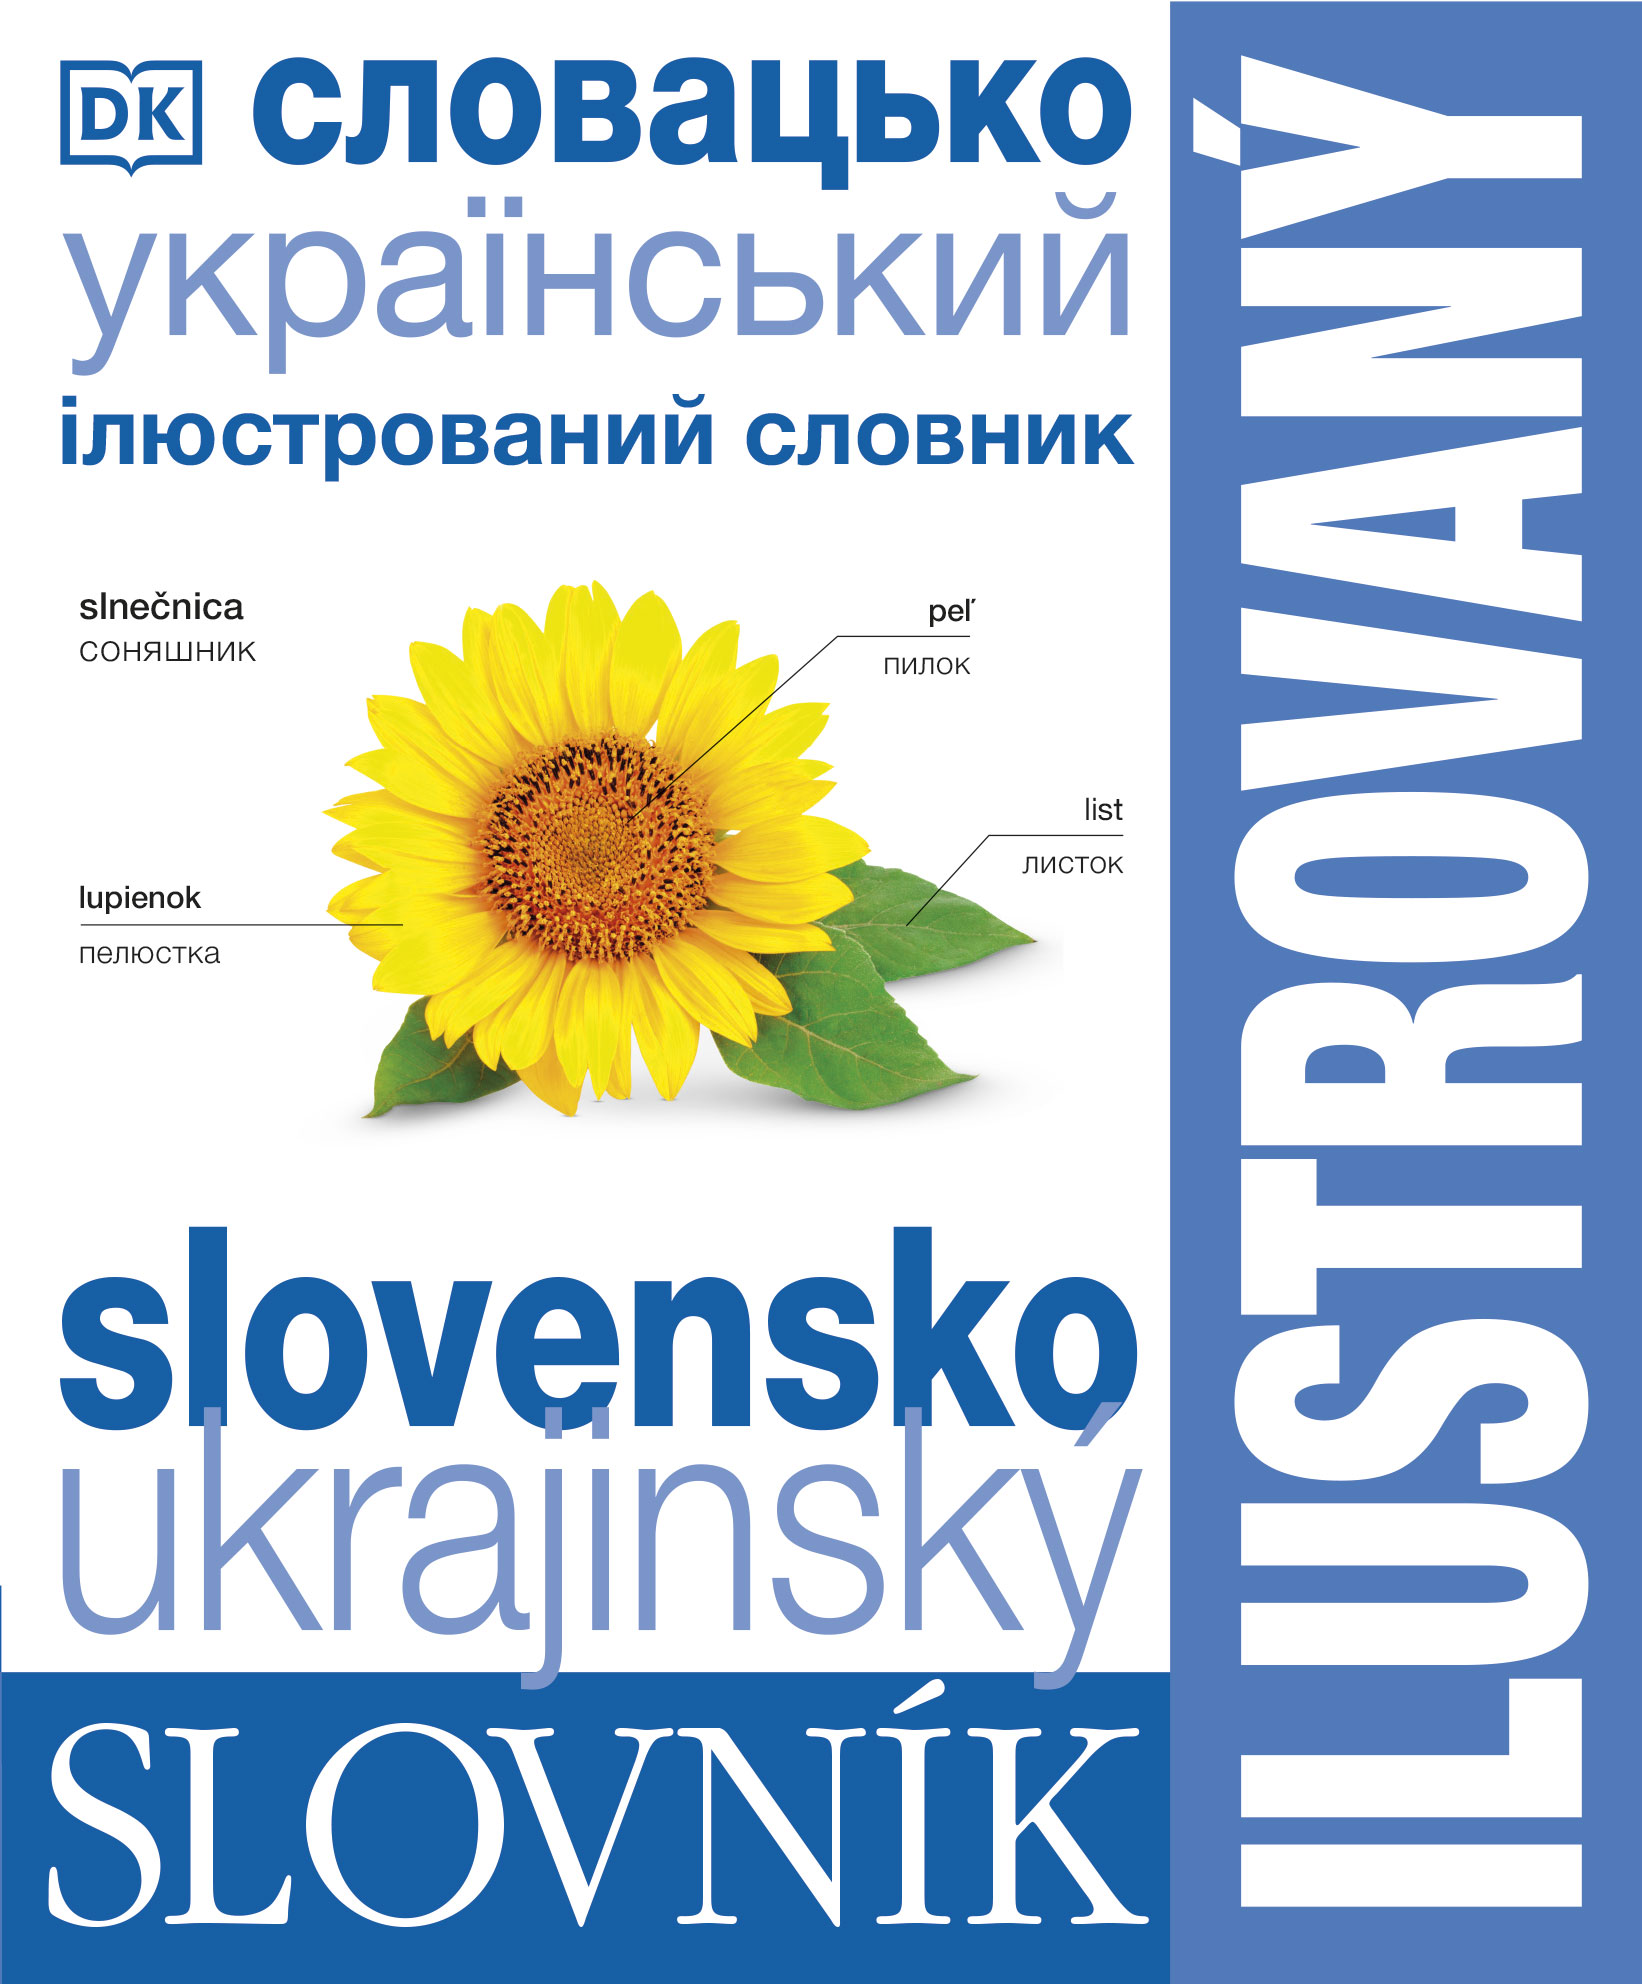 Ilustrovaný slovník slovensko-ukrajinský